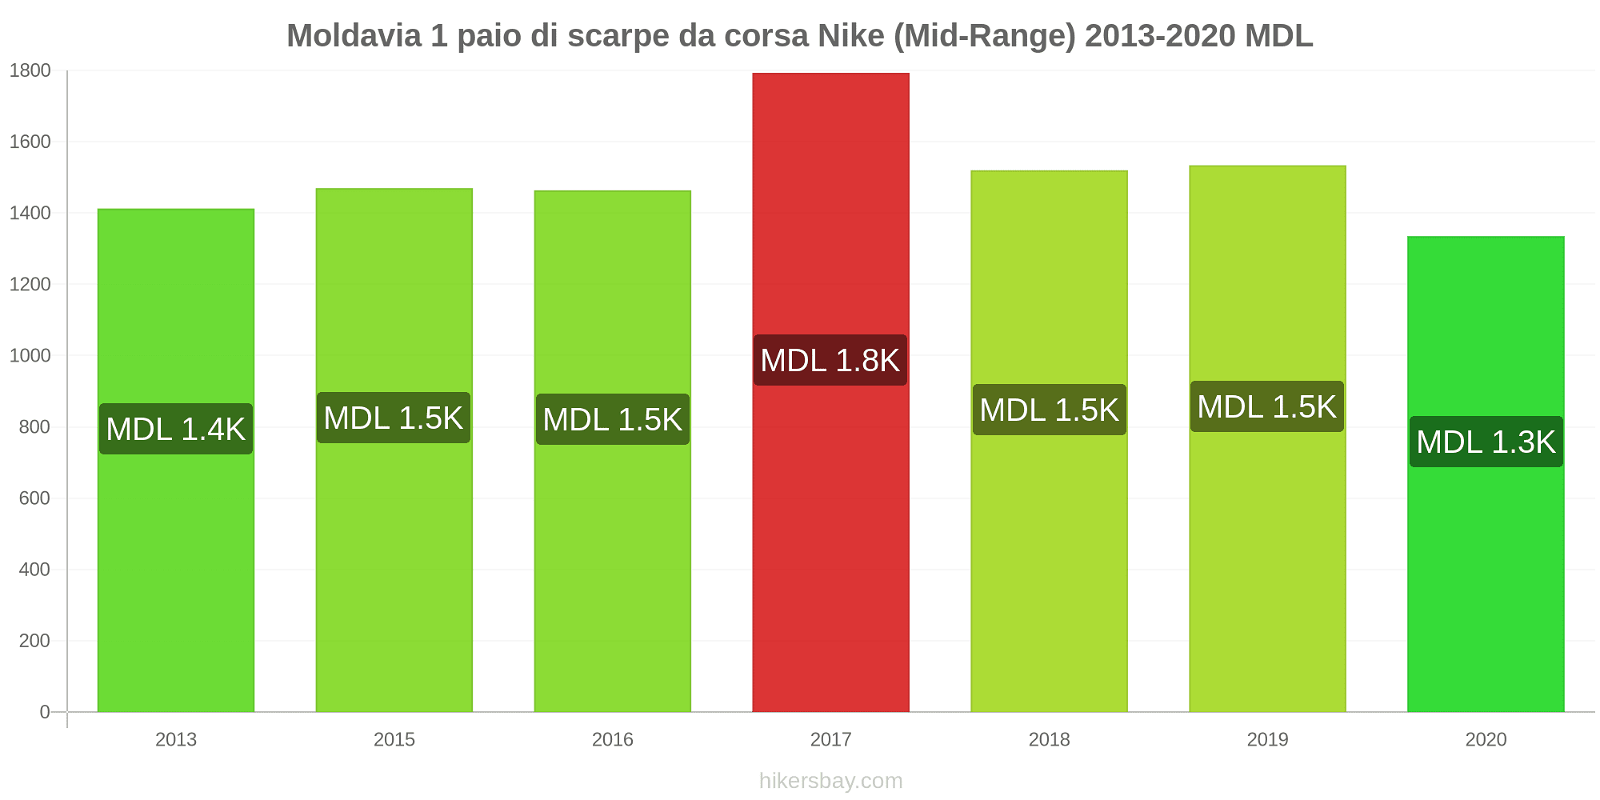 Moldavia variazioni di prezzo 1 paio di scarpe da corsa Nike (simile) hikersbay.com